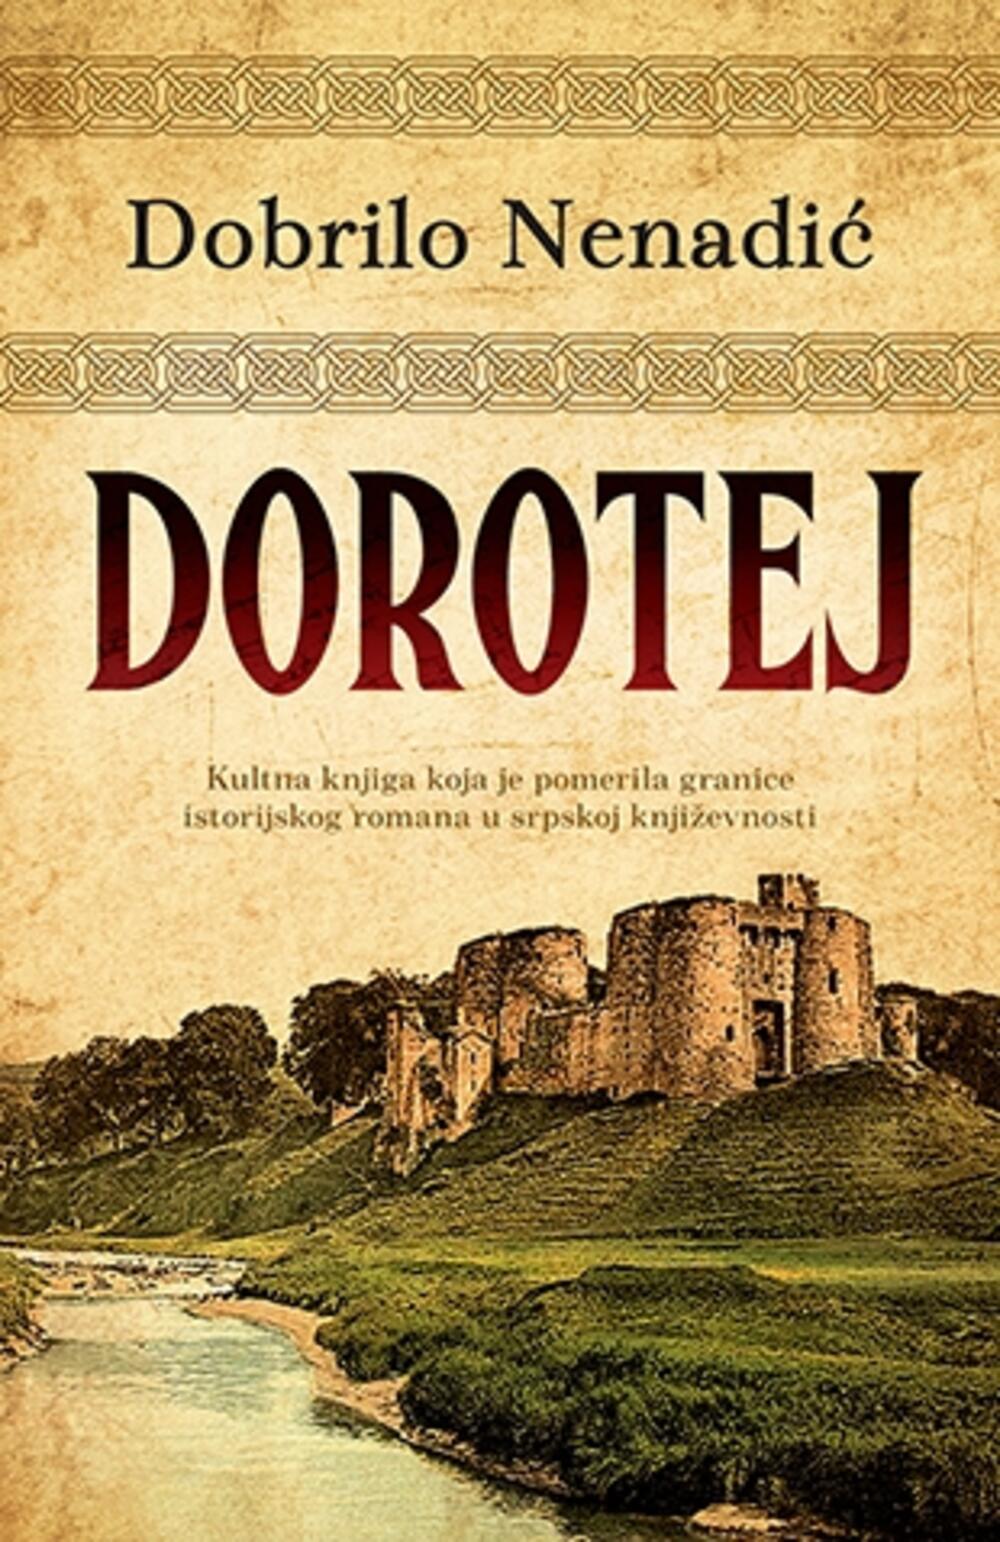 Roman Dorotej je 1978. godine dobio nagradu Narodne biblioteke Srbije za najčitaniju knjigu godine